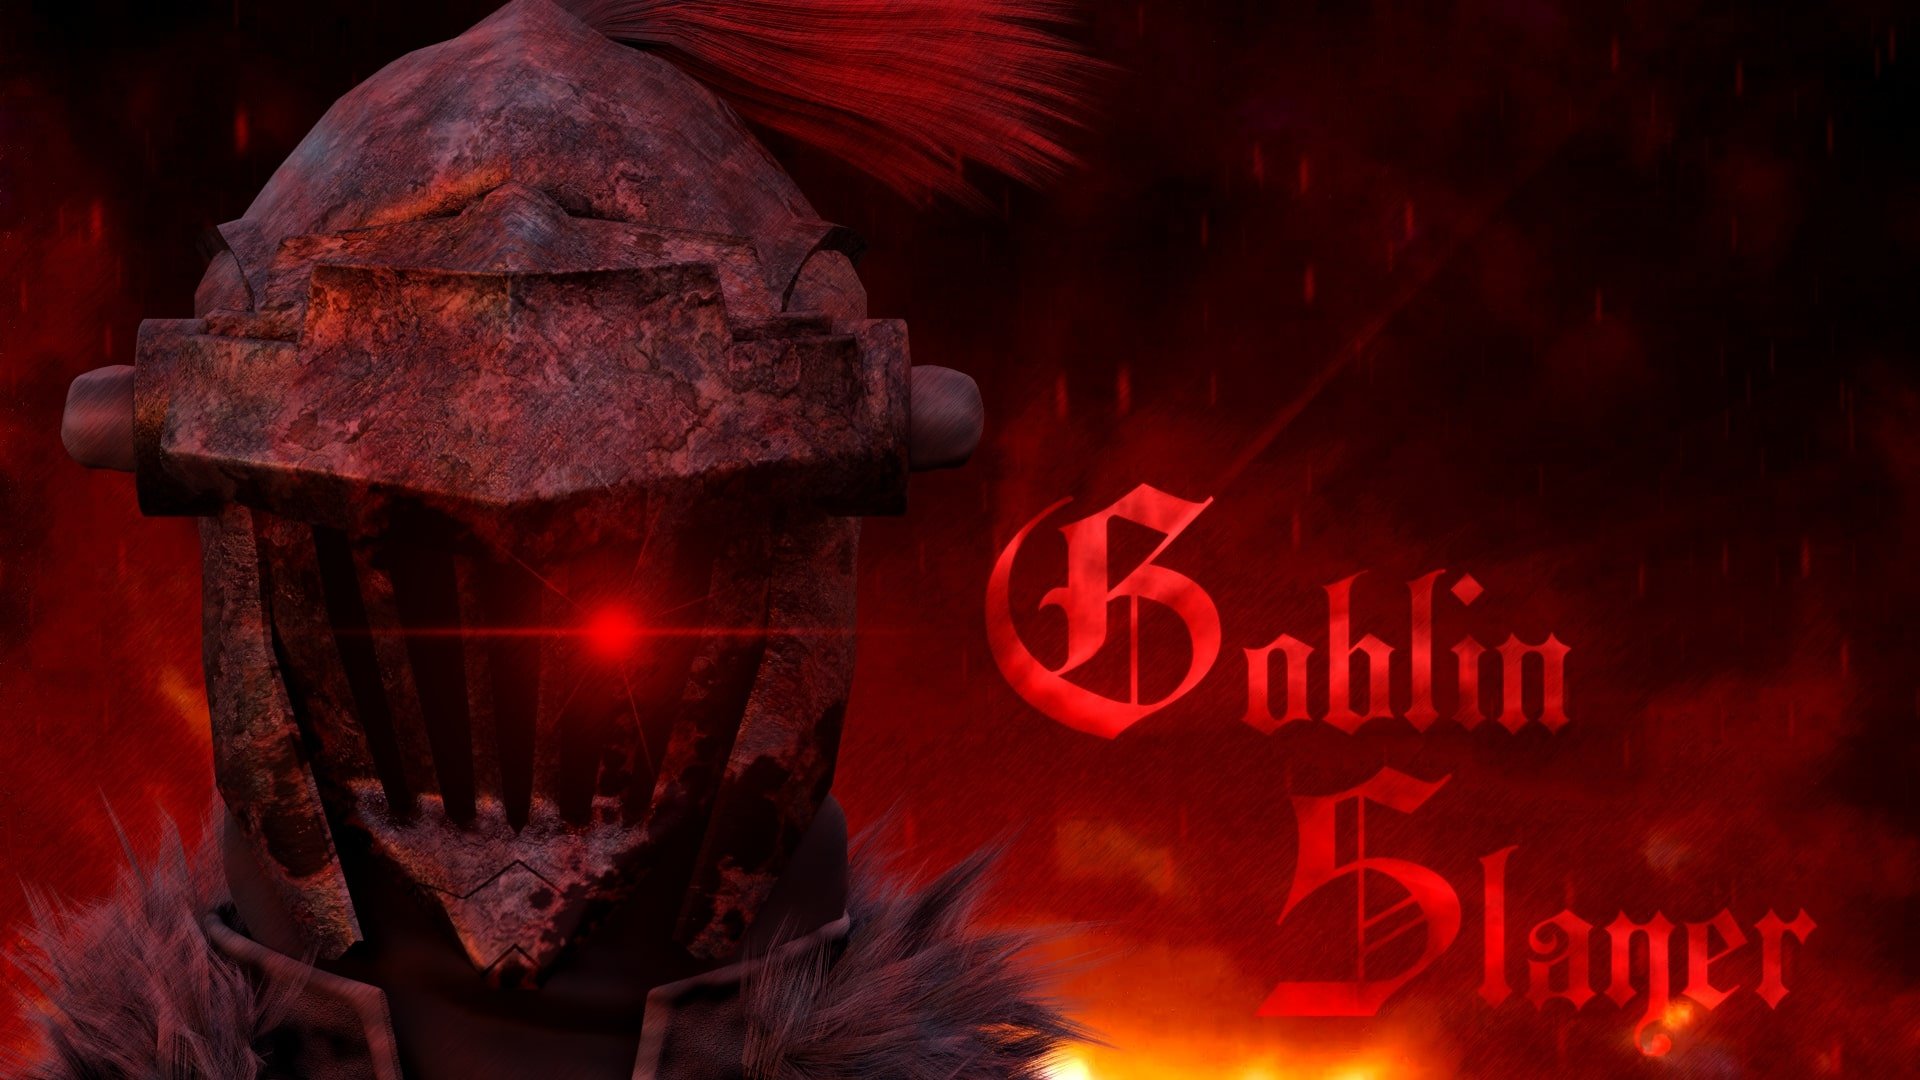 Goblin Slayer BD